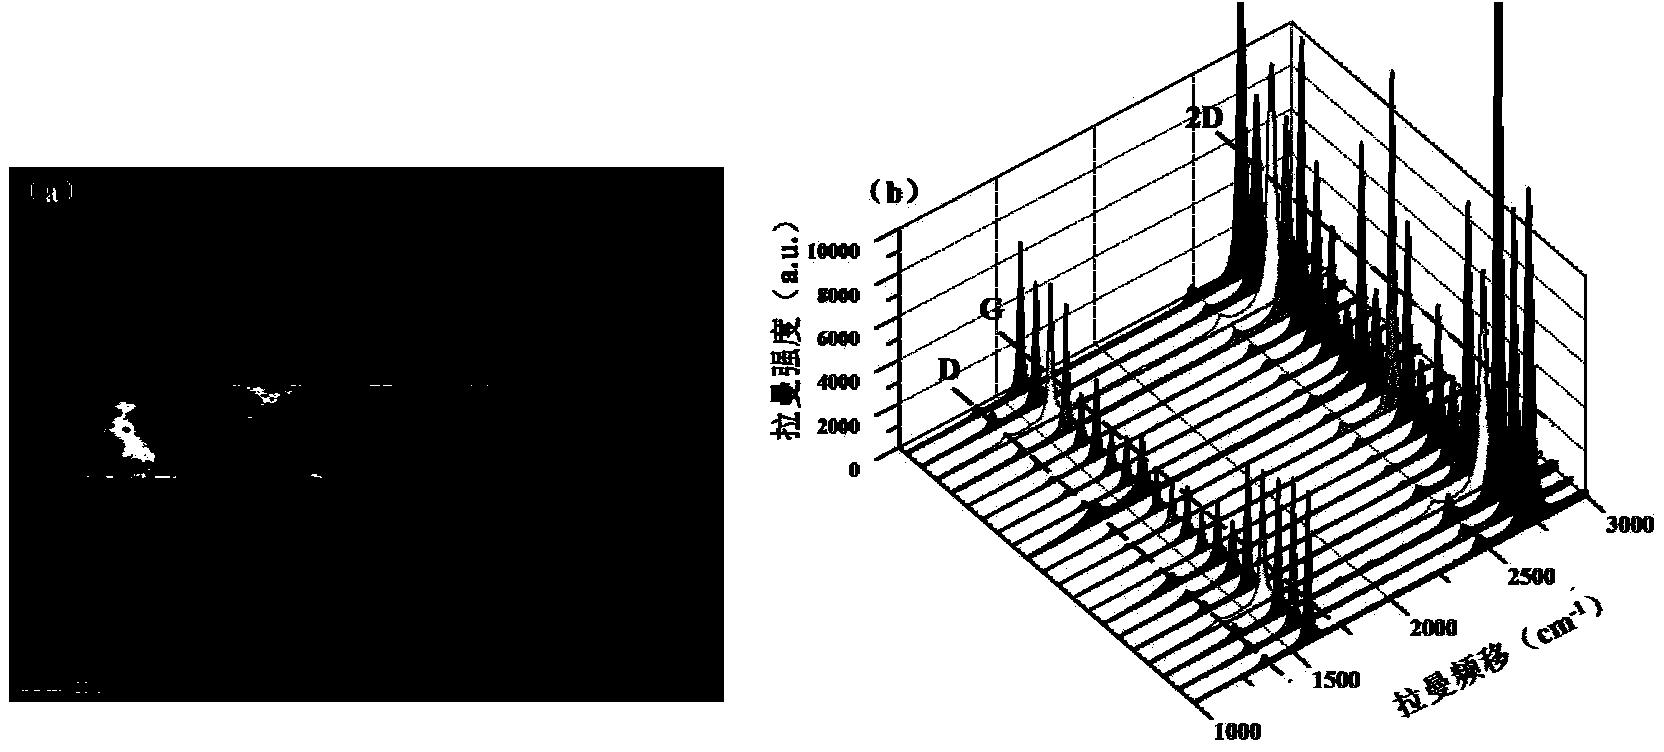 Laser preparation method for large-area patterned graphene